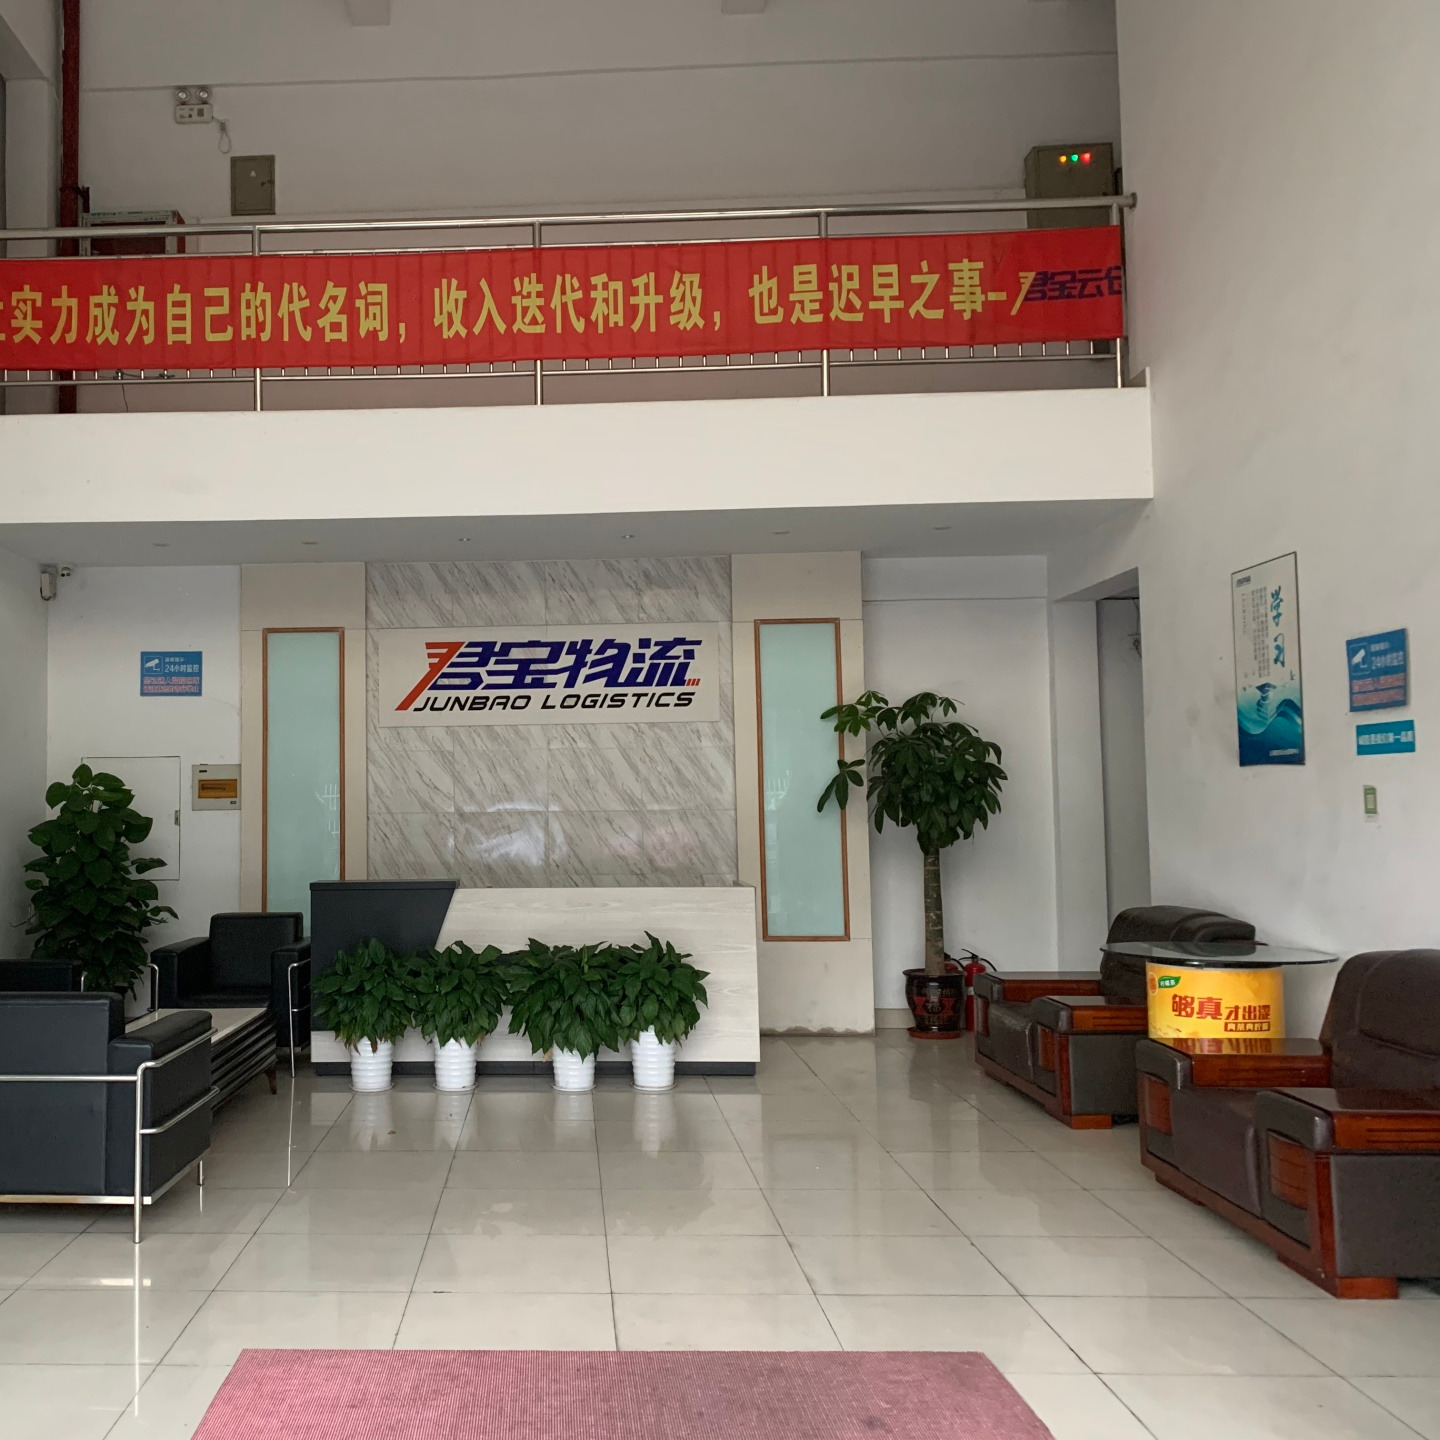 上海君宝物流有限公司 位于上海嘉定区仓储配送与仓库租赁 ，货运专线公司  满足客户B2B B2C一站式服务